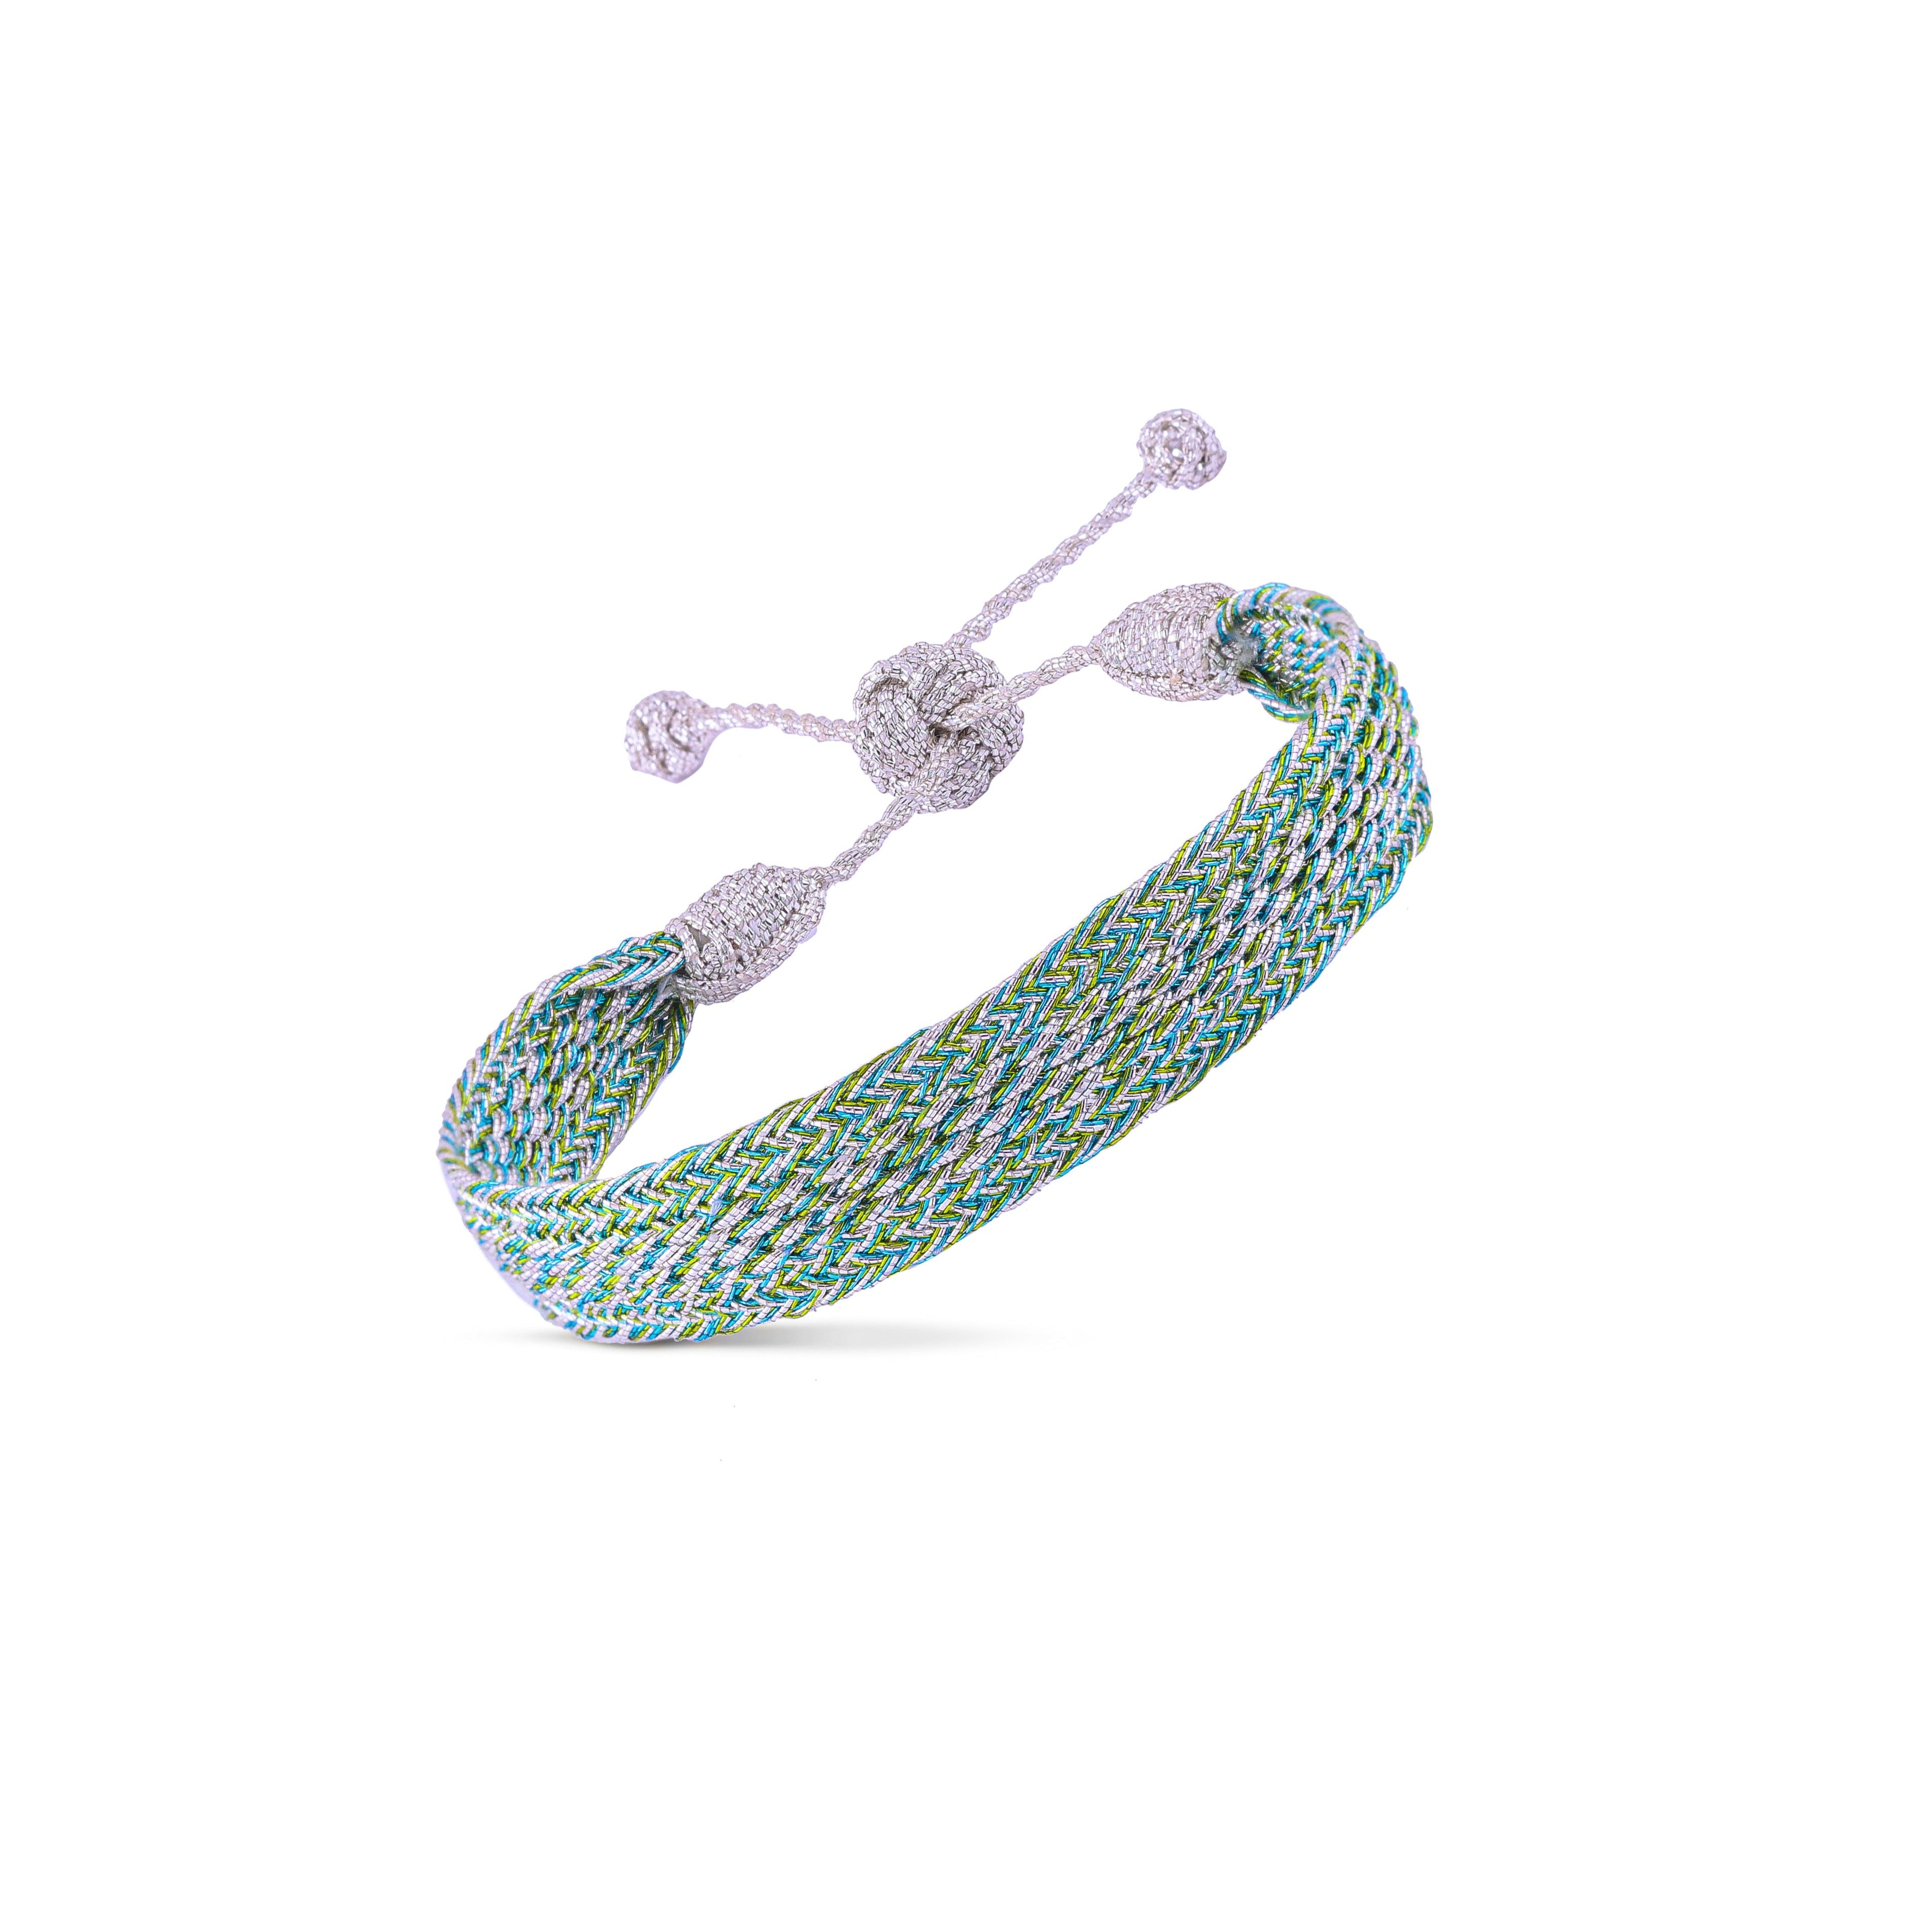 Izy n°1 Bracelet in Silver Green